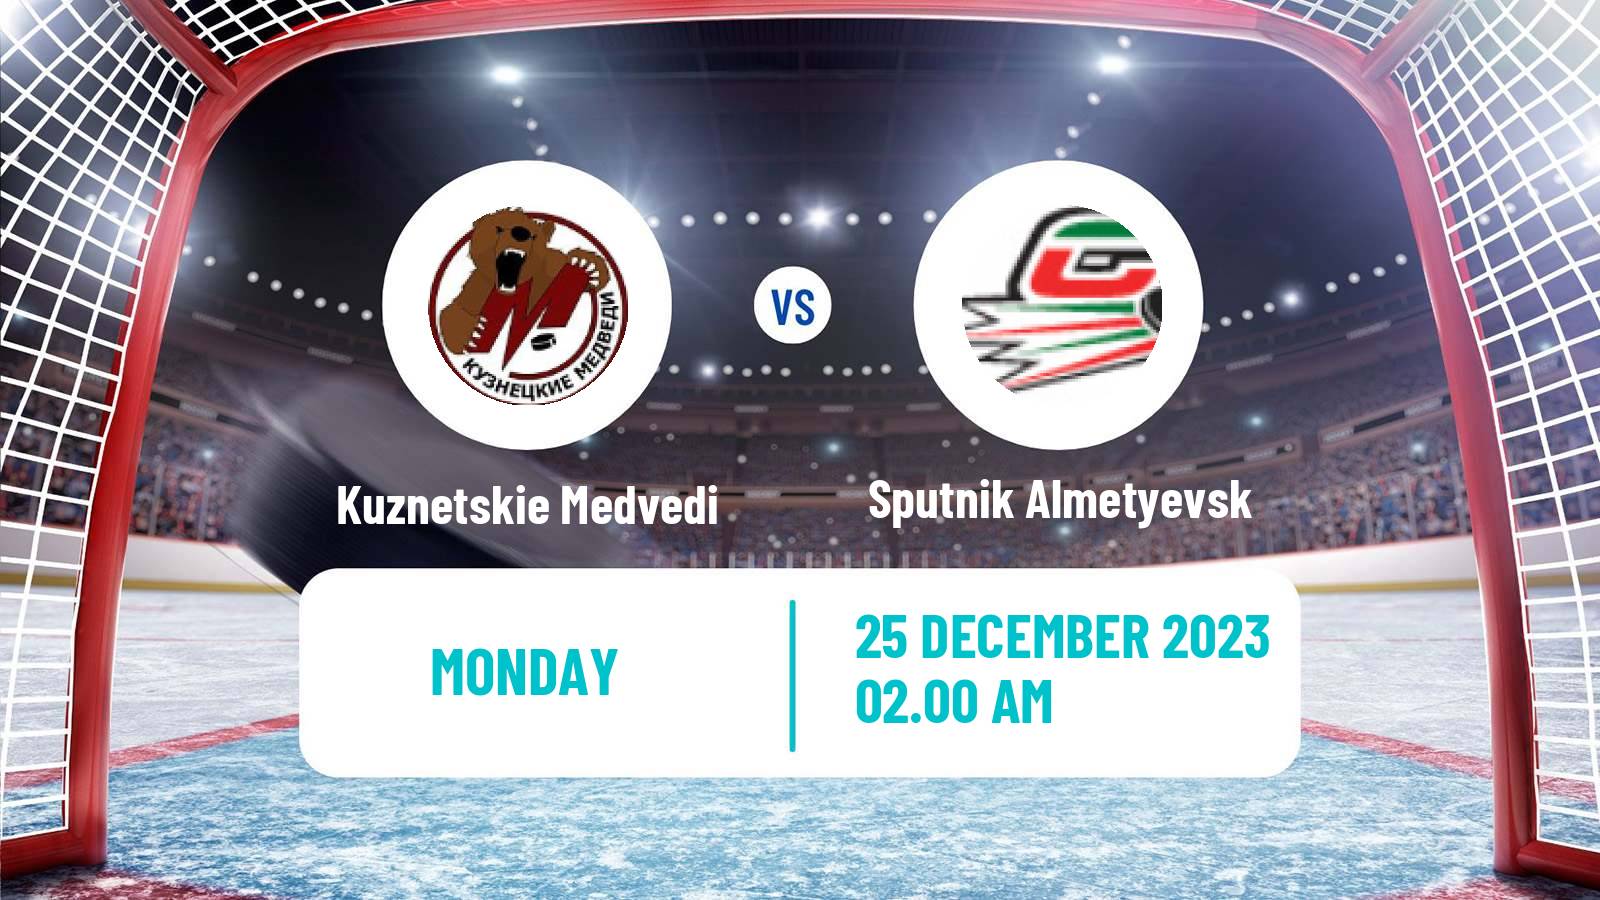 Hockey MHL Kuznetskie Medvedi - Sputnik Almetyevsk